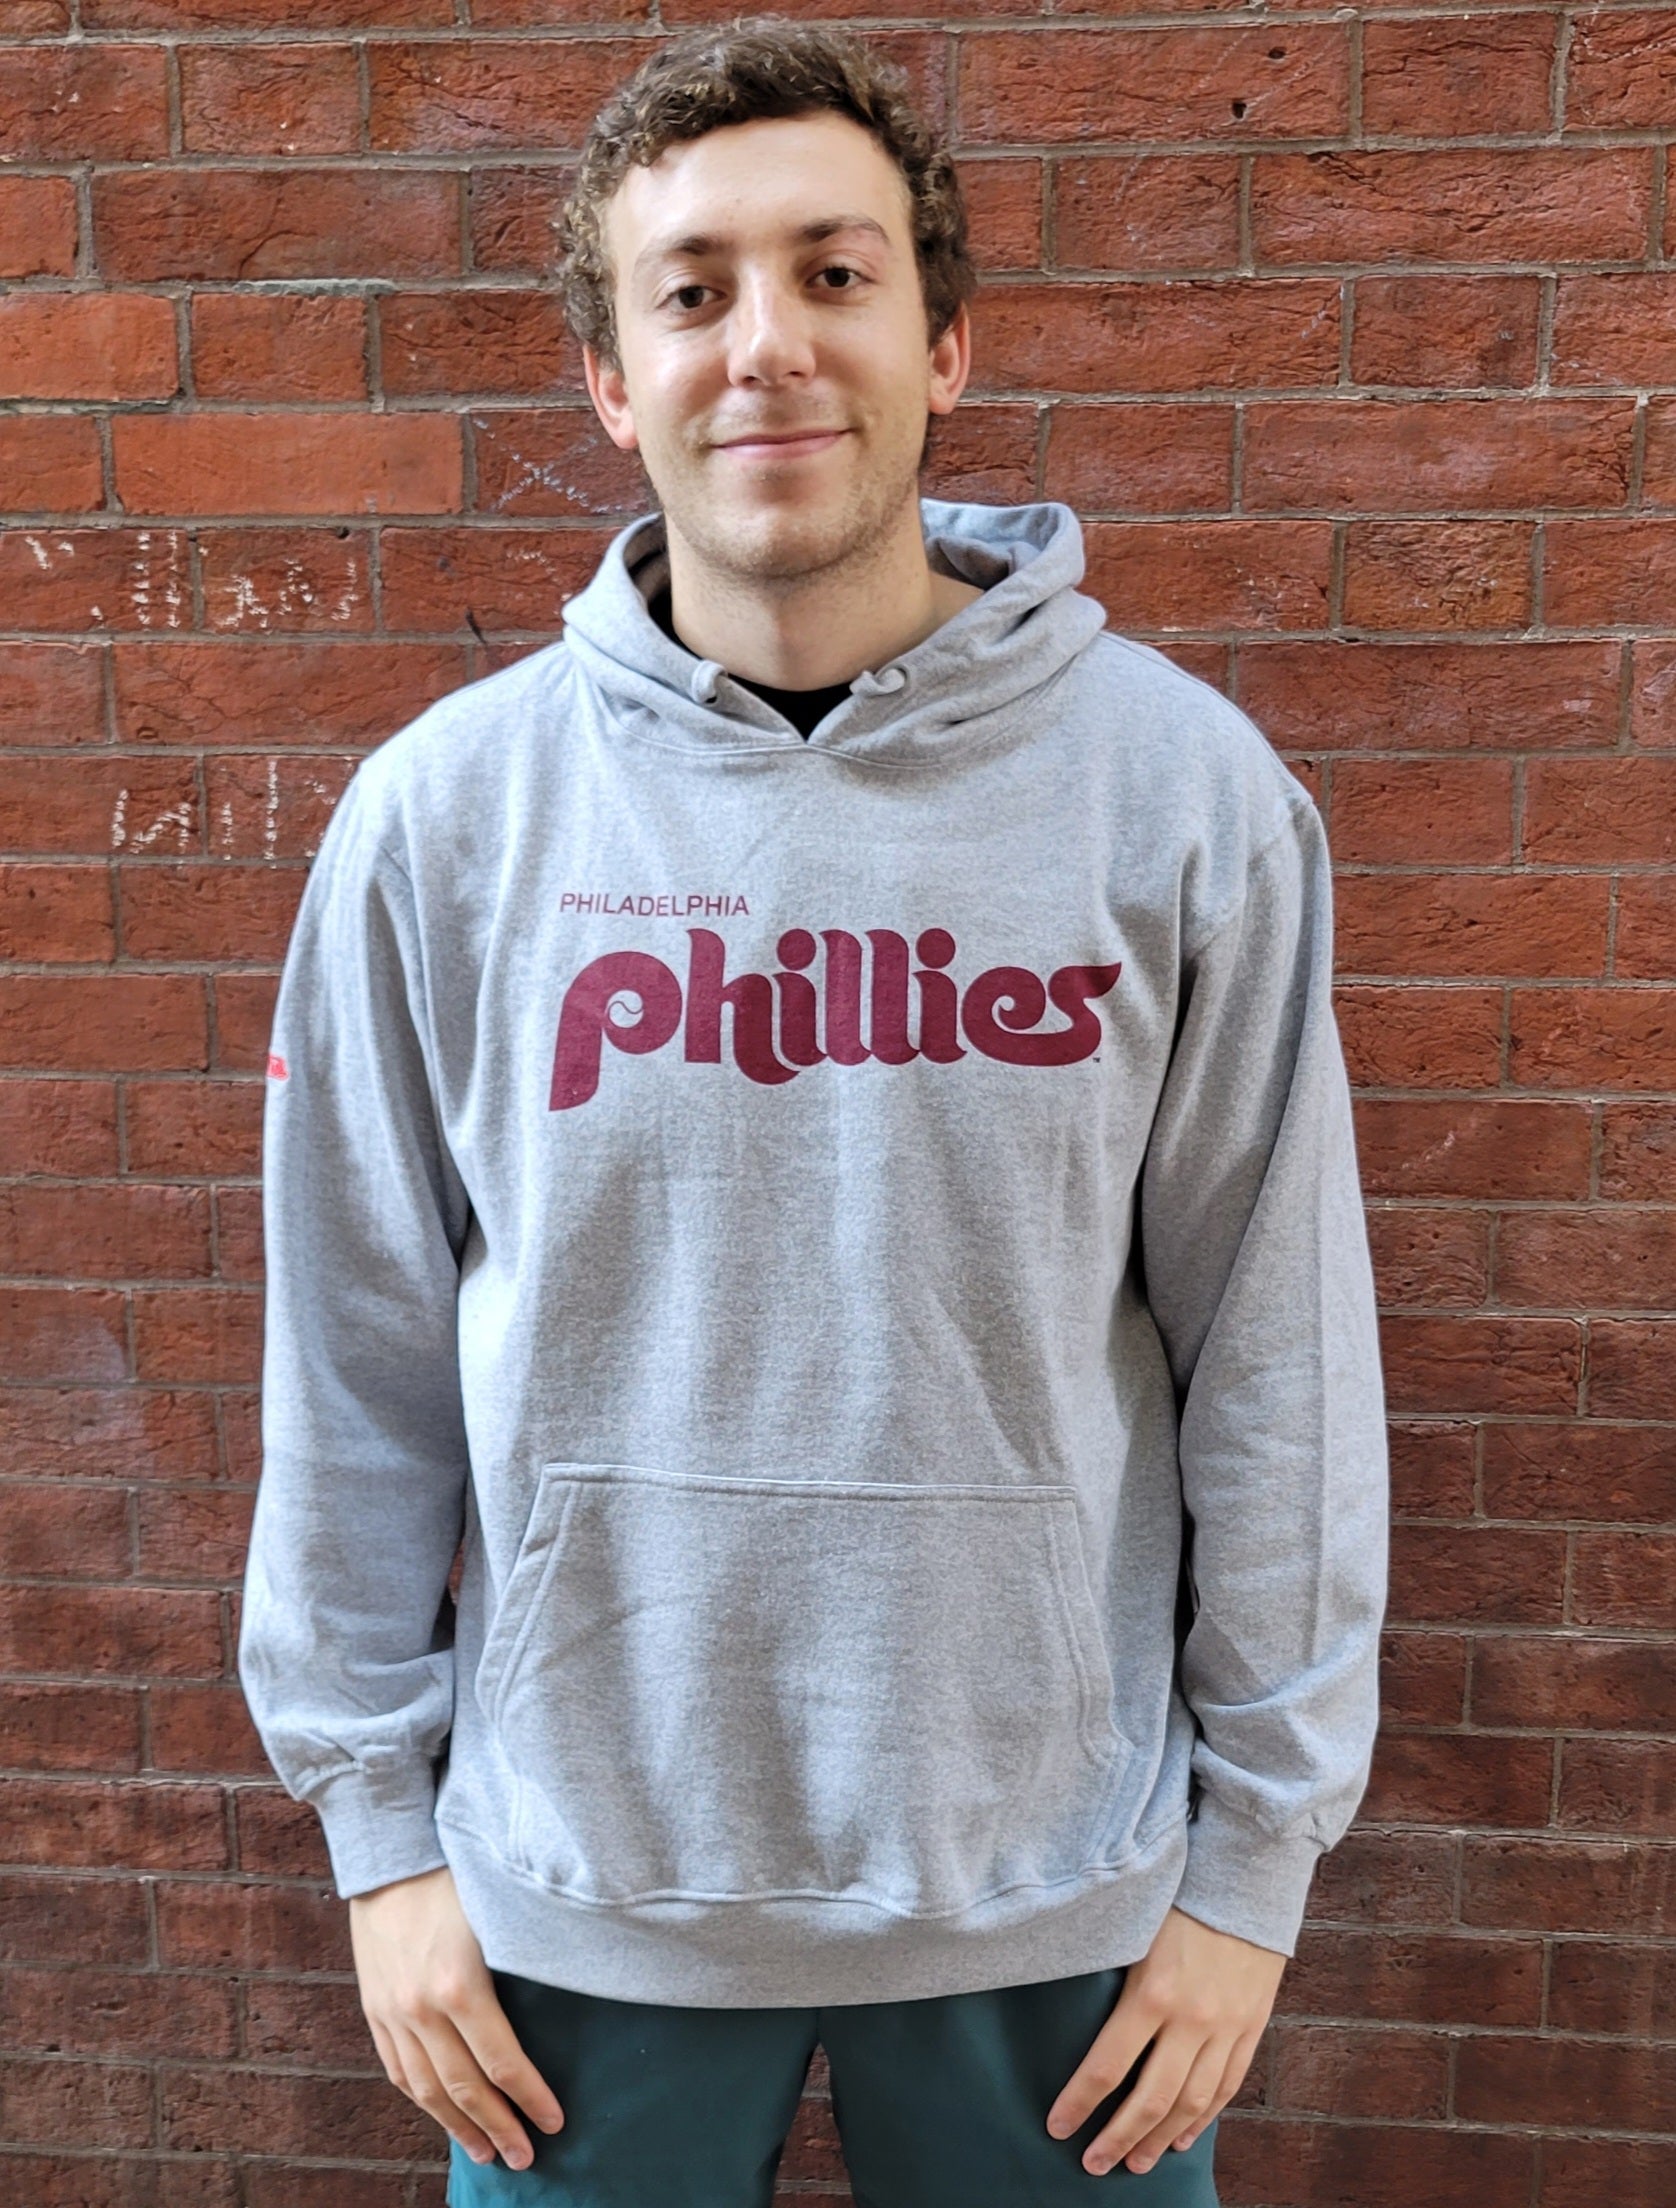 Philadelphia Phillies Hoodie Tshirt Sweatshirt Mens Womens